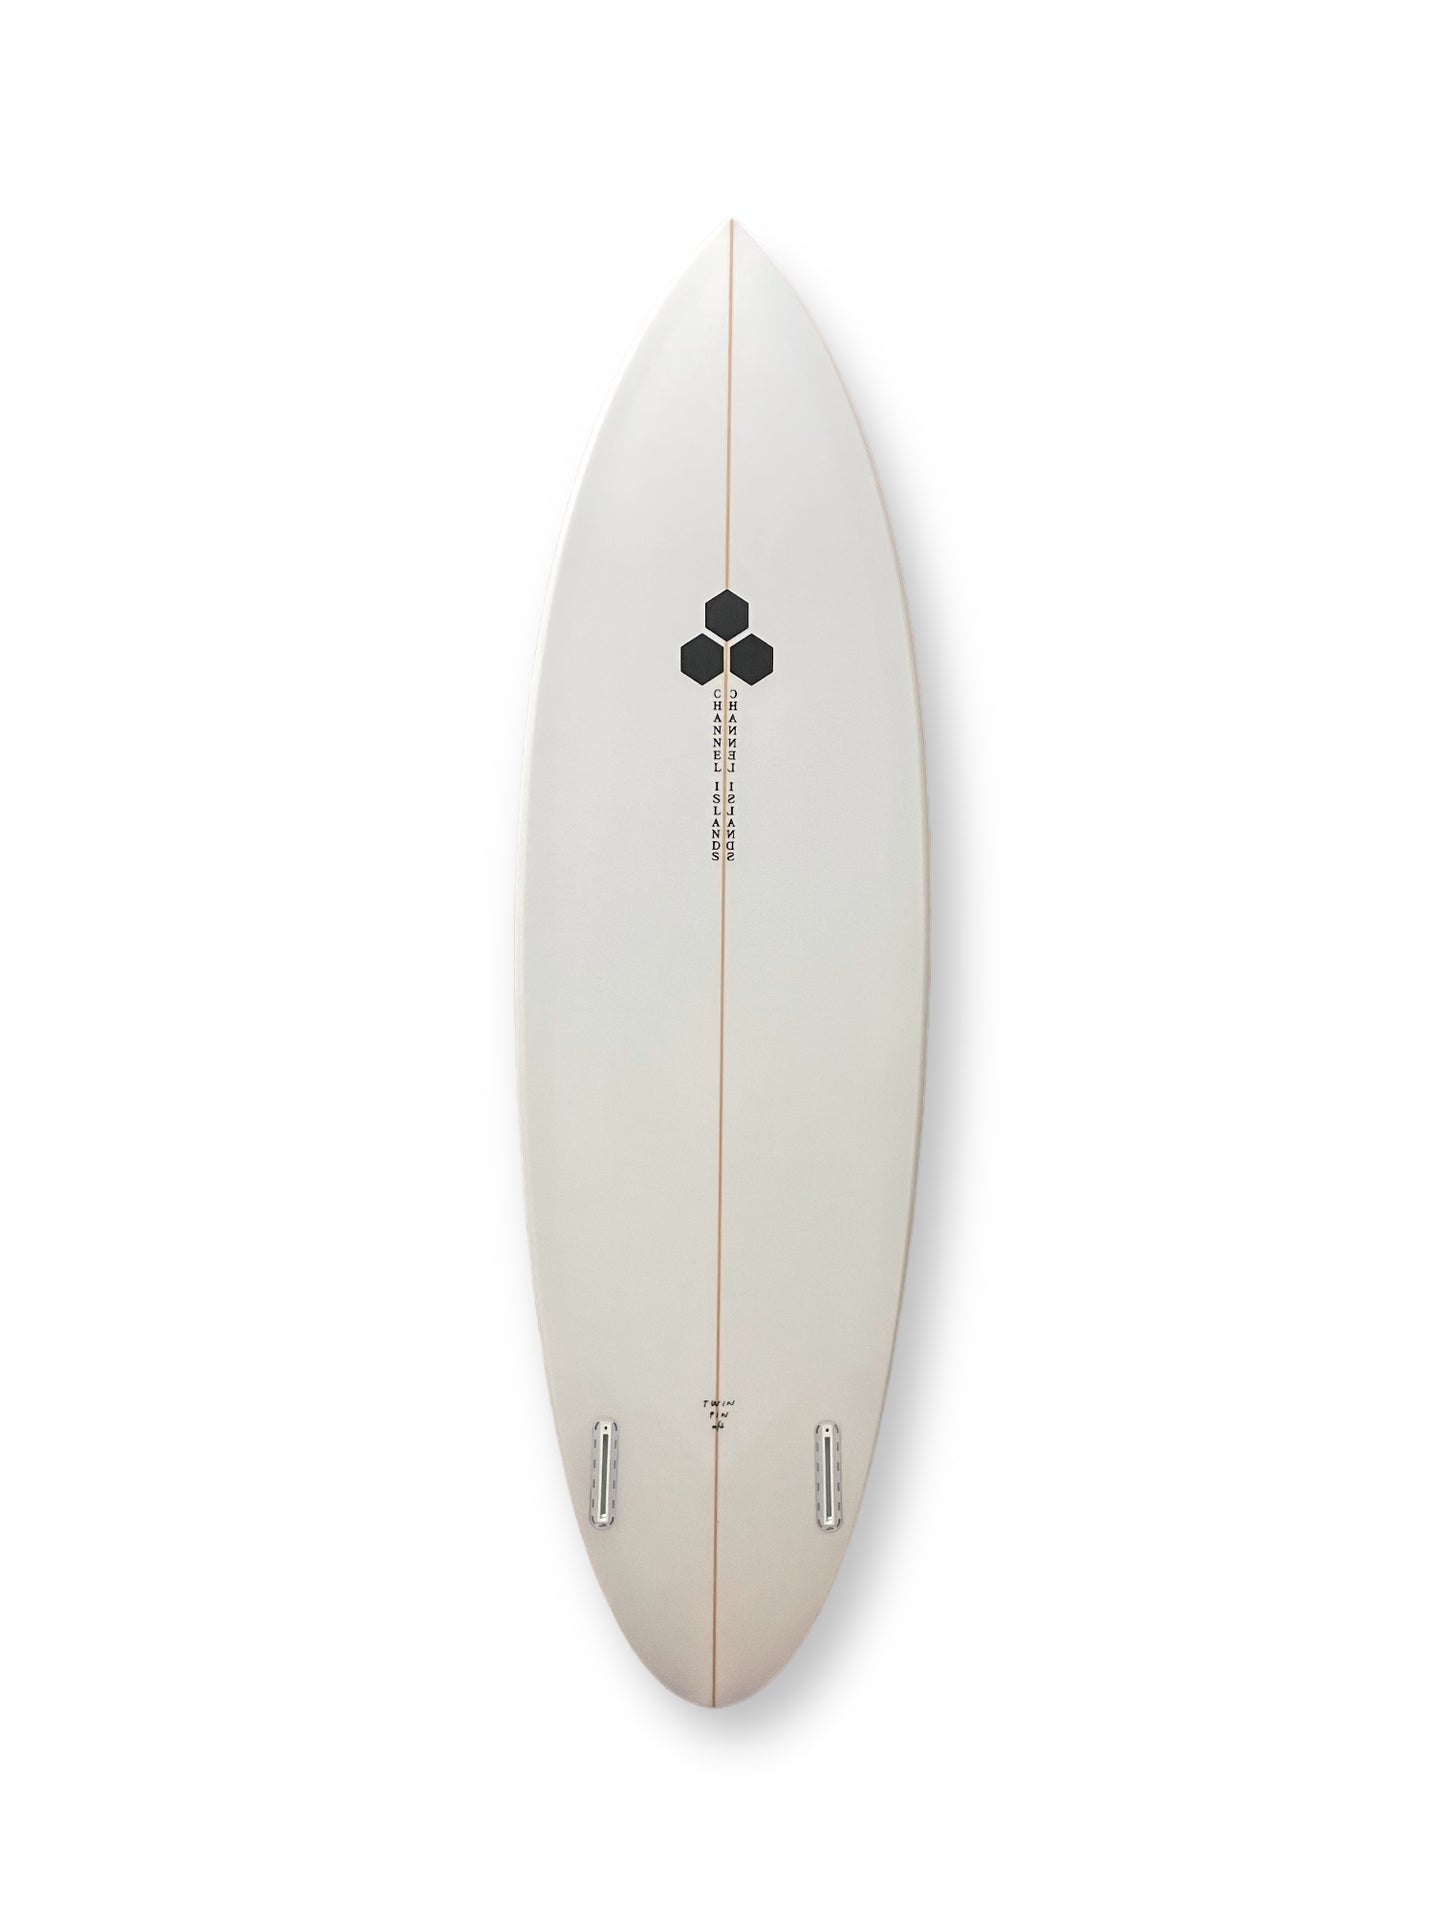 CHANNEL ISLANDS TWIN PIN 5'7" SURFBOARD